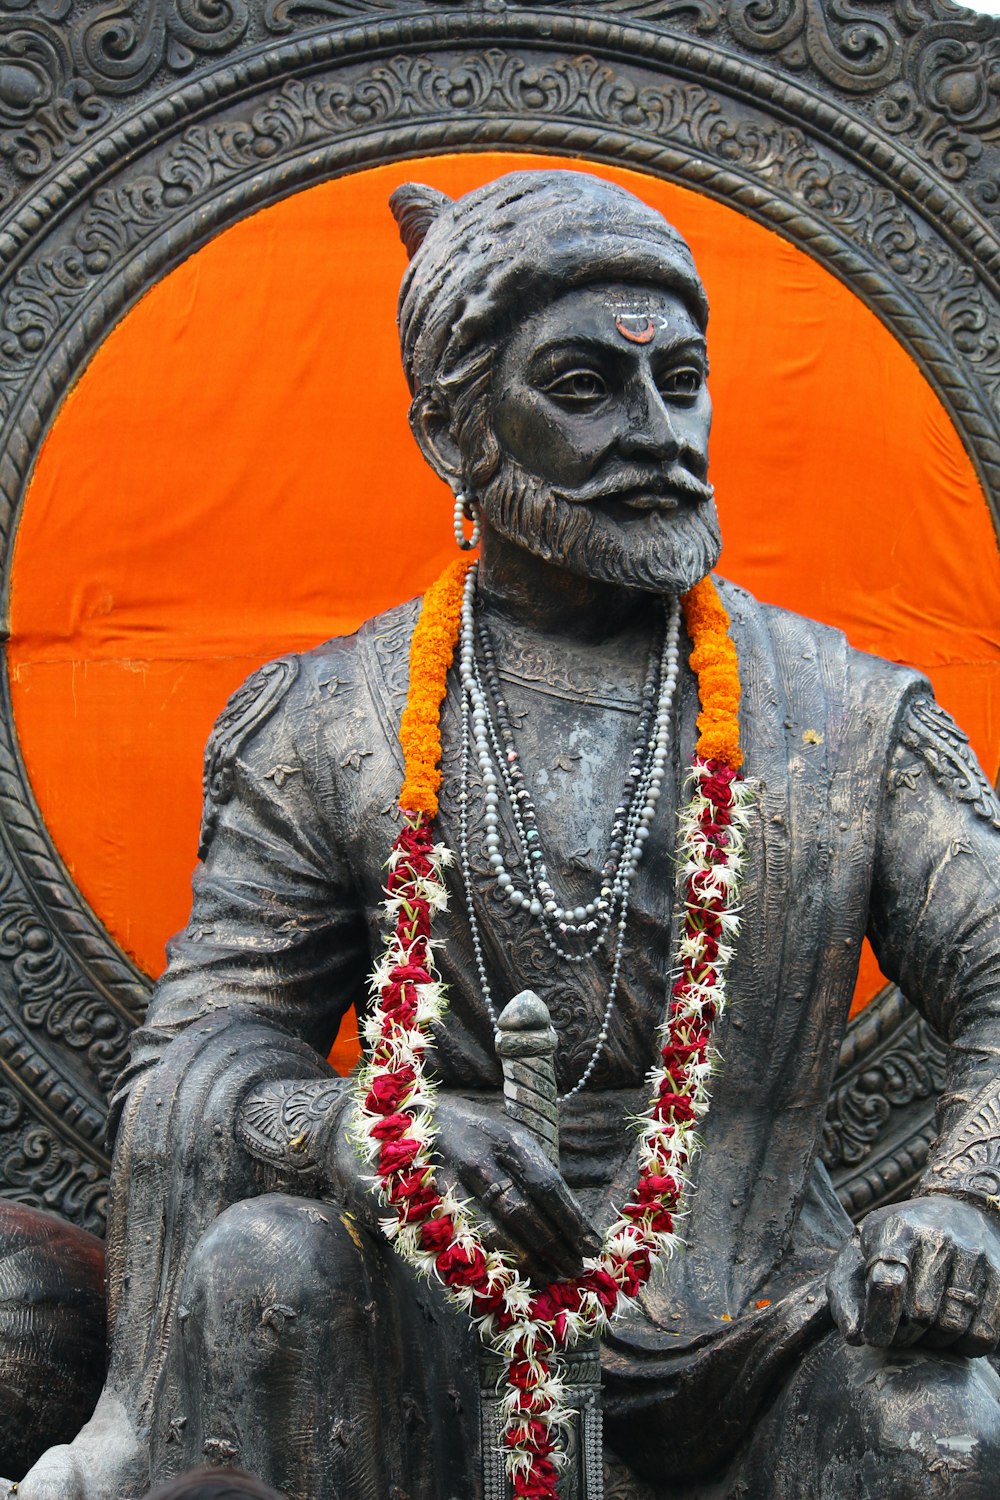 Eine Statue eines Mannes, der vor einem orangefarbenen Kreis sitzt